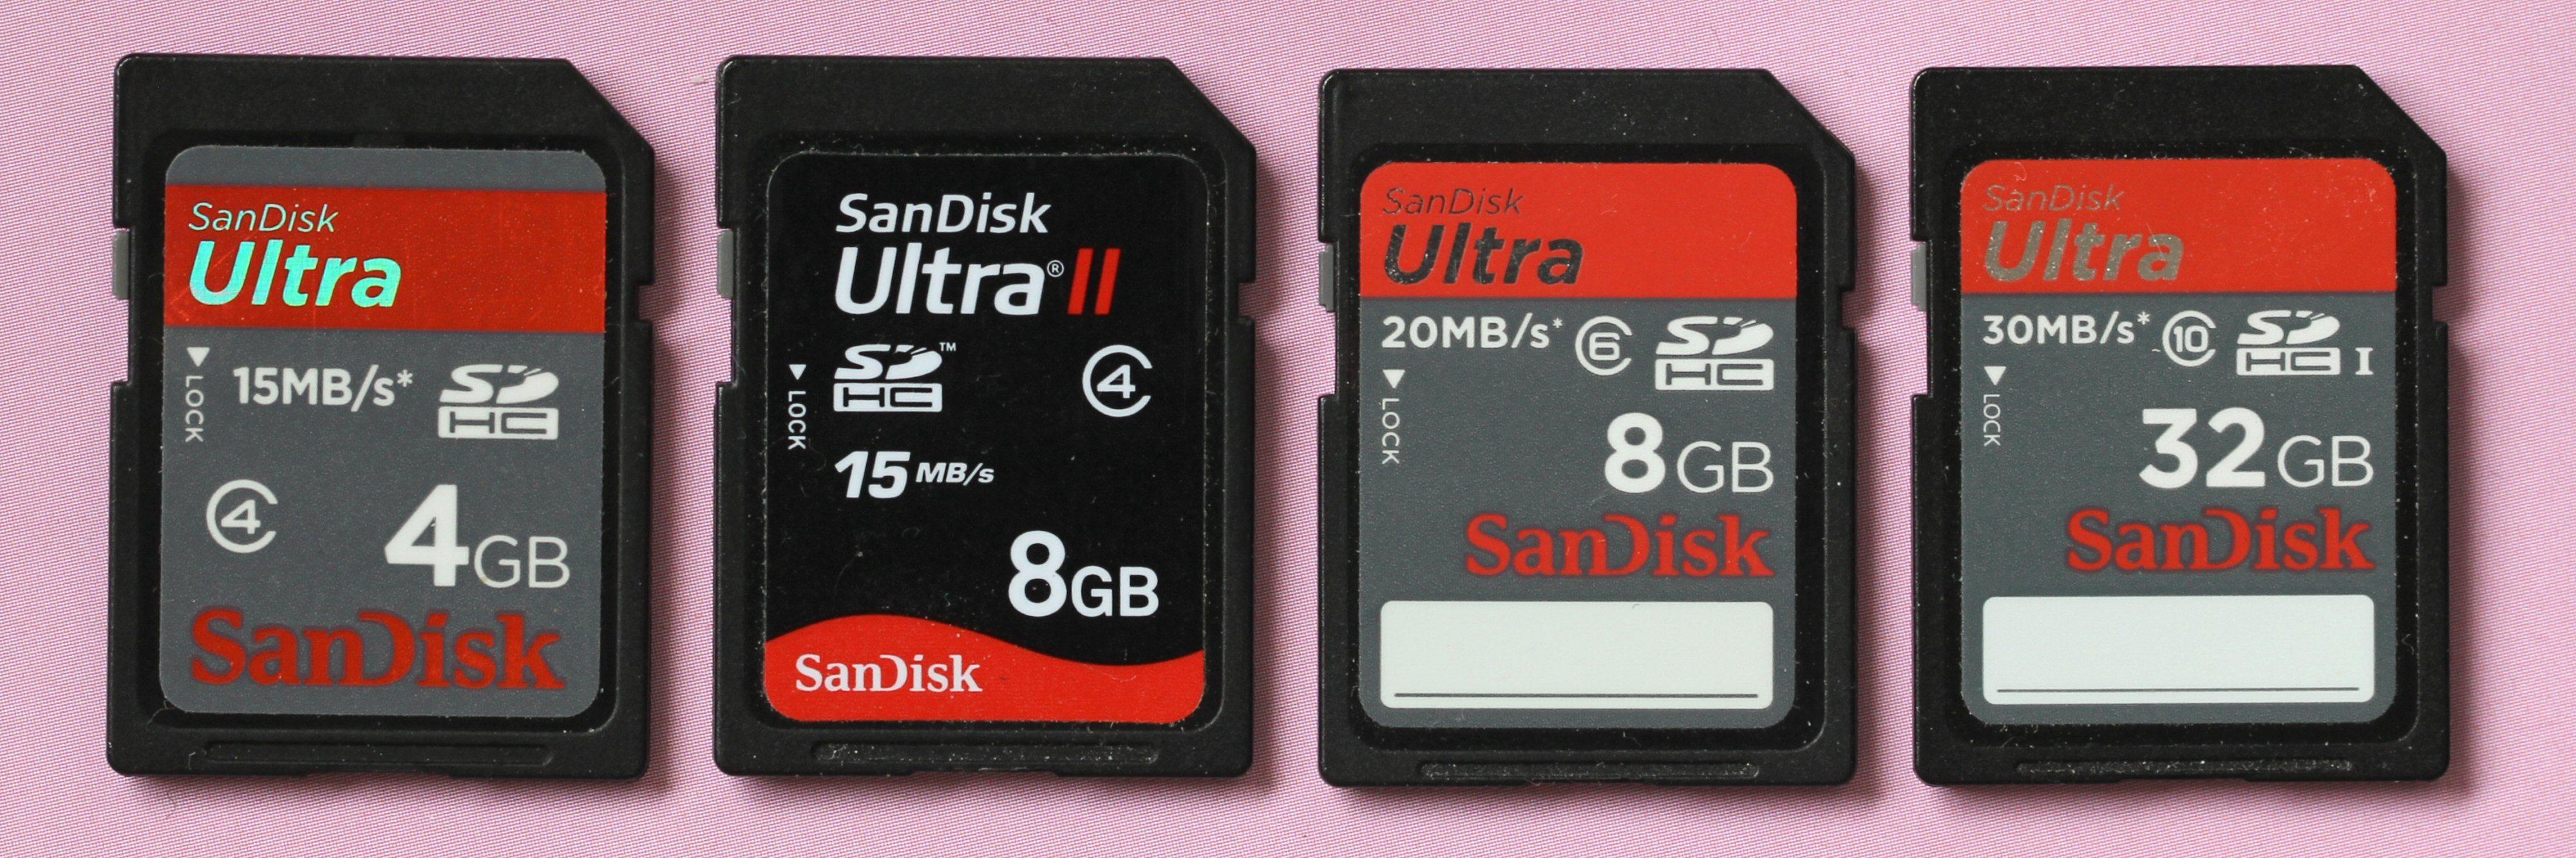 Å se hvor mye data et minnekort kan romme er som oftest enkelt. På disse kortene er det fra venstre 4 GB, 8 GB, 8 GB og 32 GB. Videre vet vi nå at de alle følger SDHC-standarden.